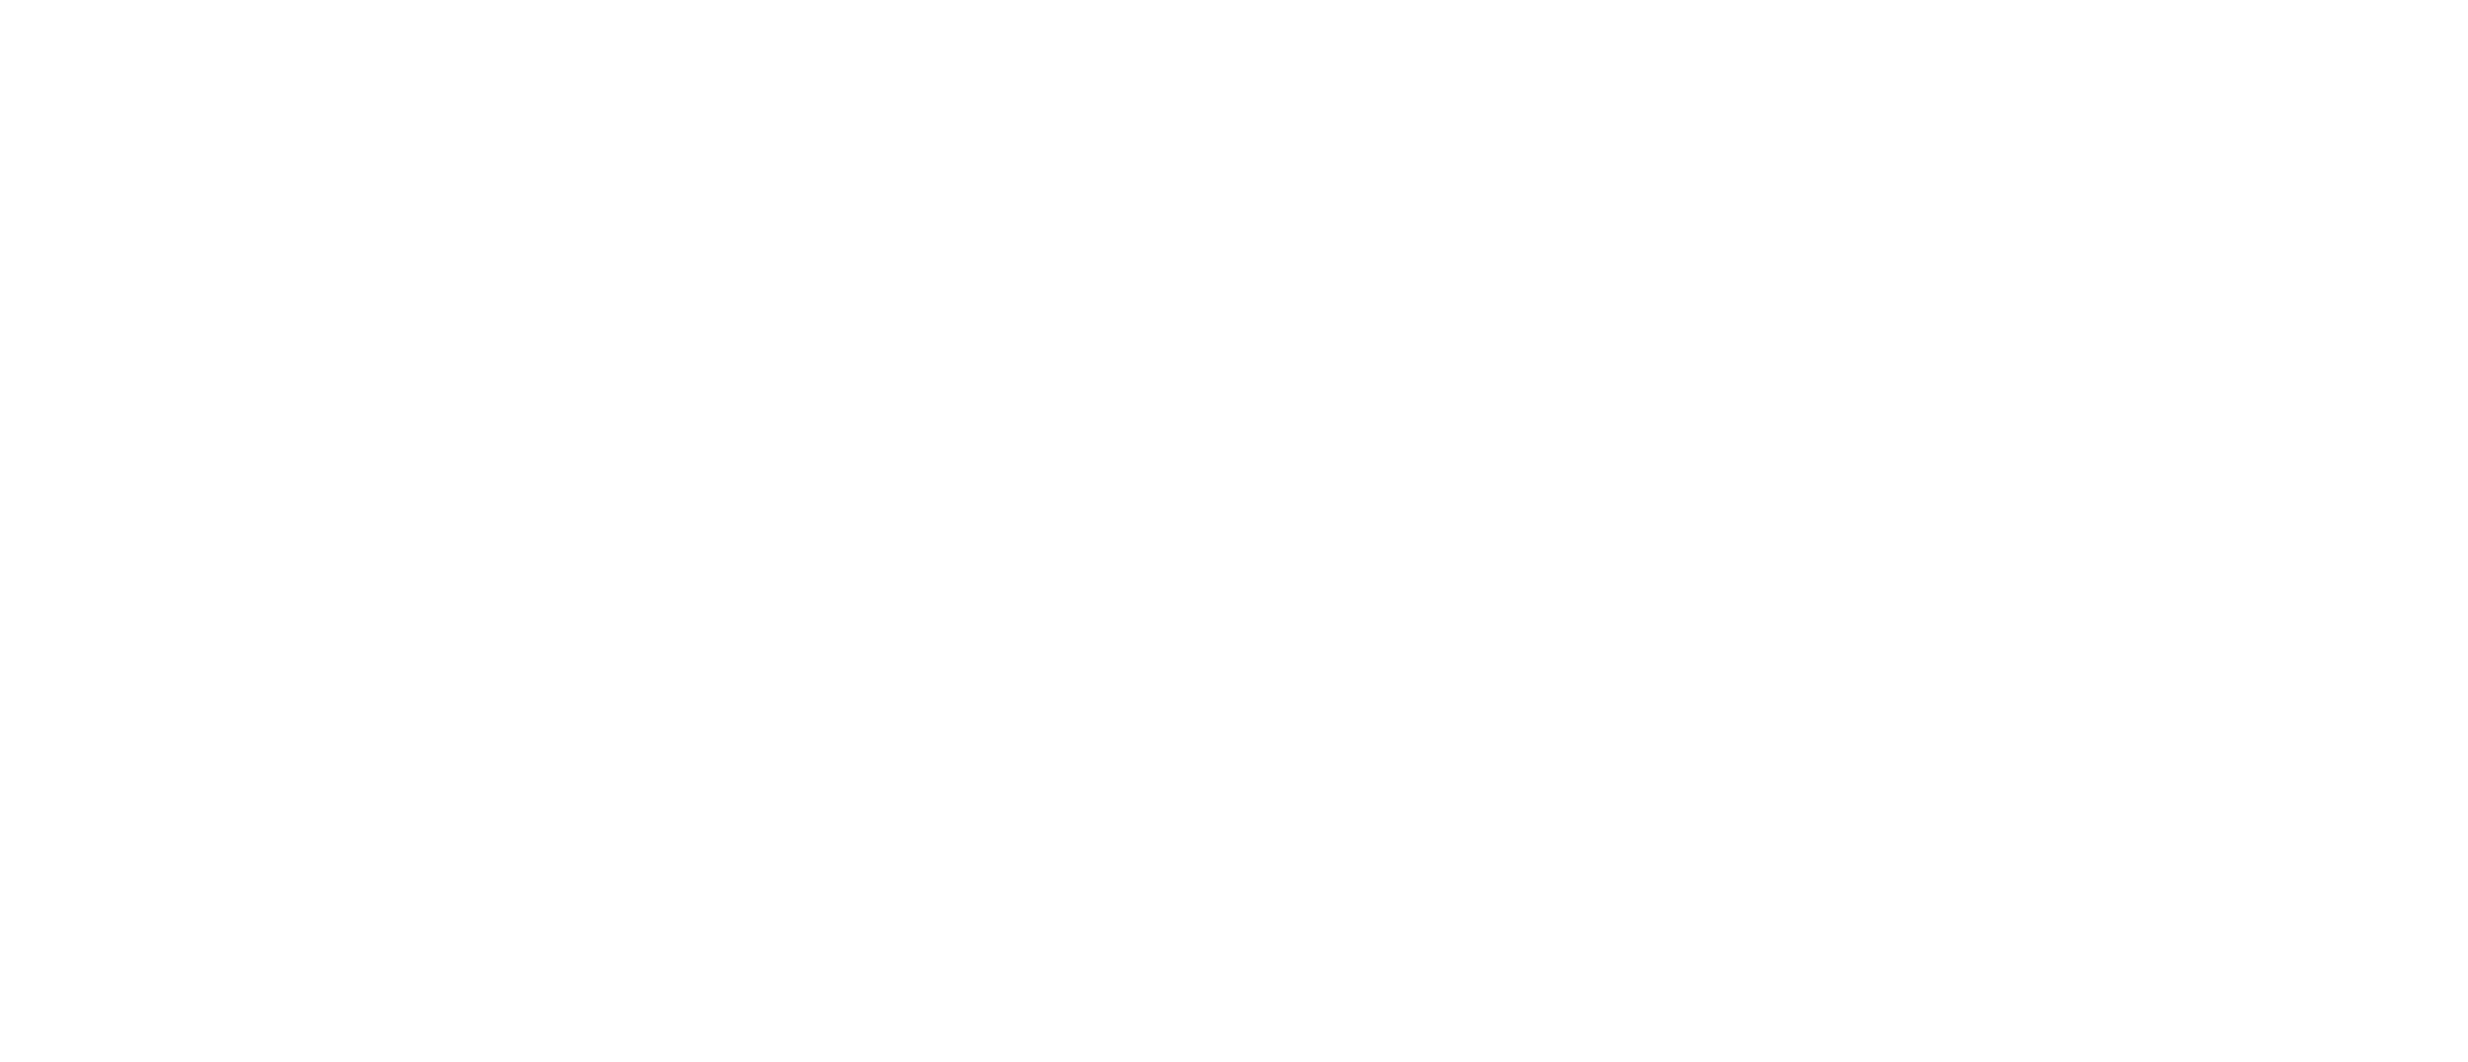 Ein Projekt von kargah e. V. und Kulturzentrum Faust e. V.